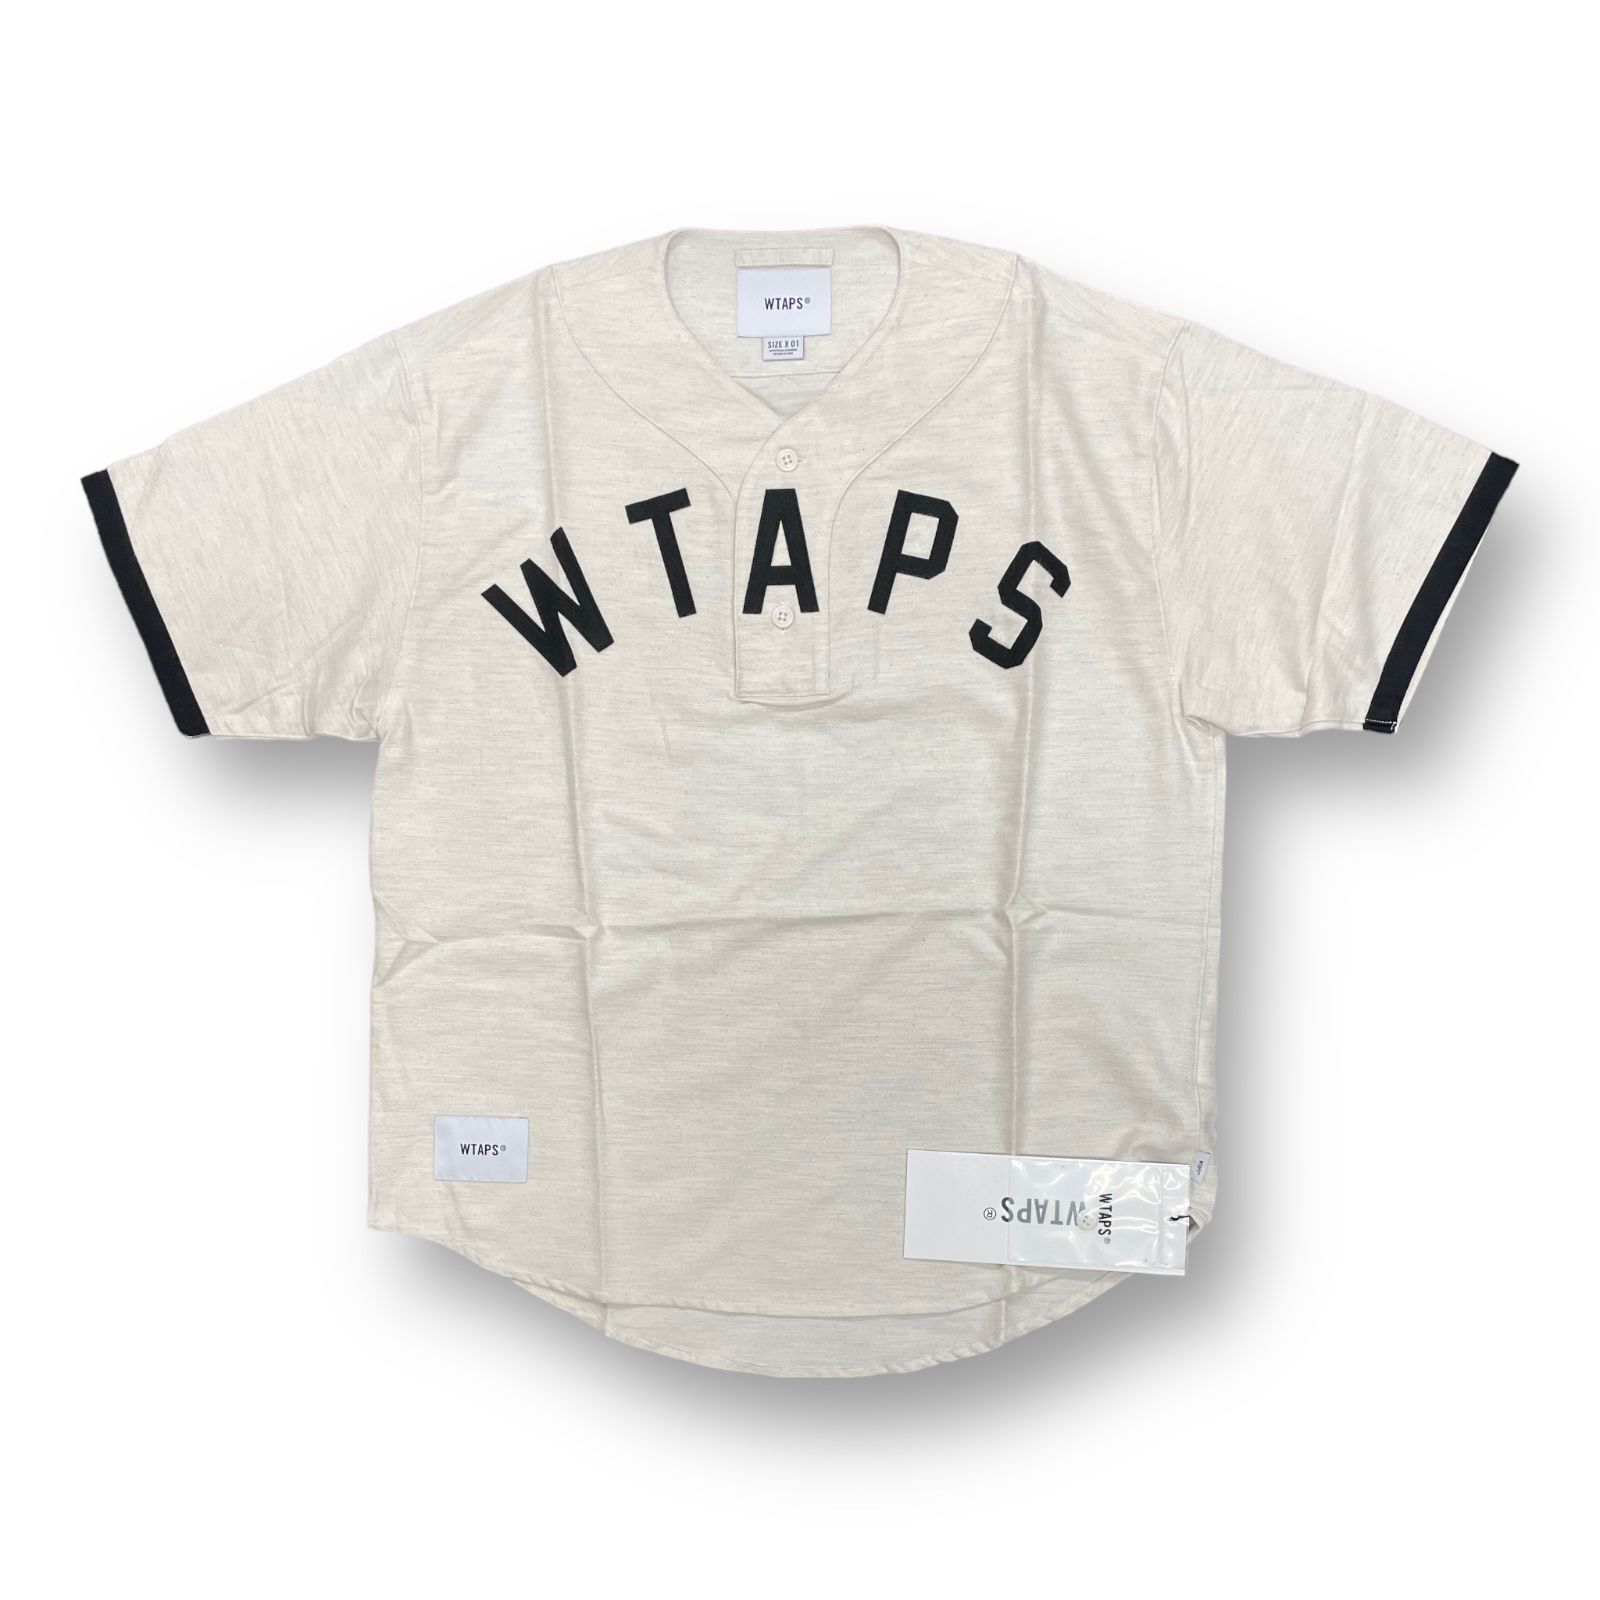 22SS WTAPS フランネル ベースボールシャツ L